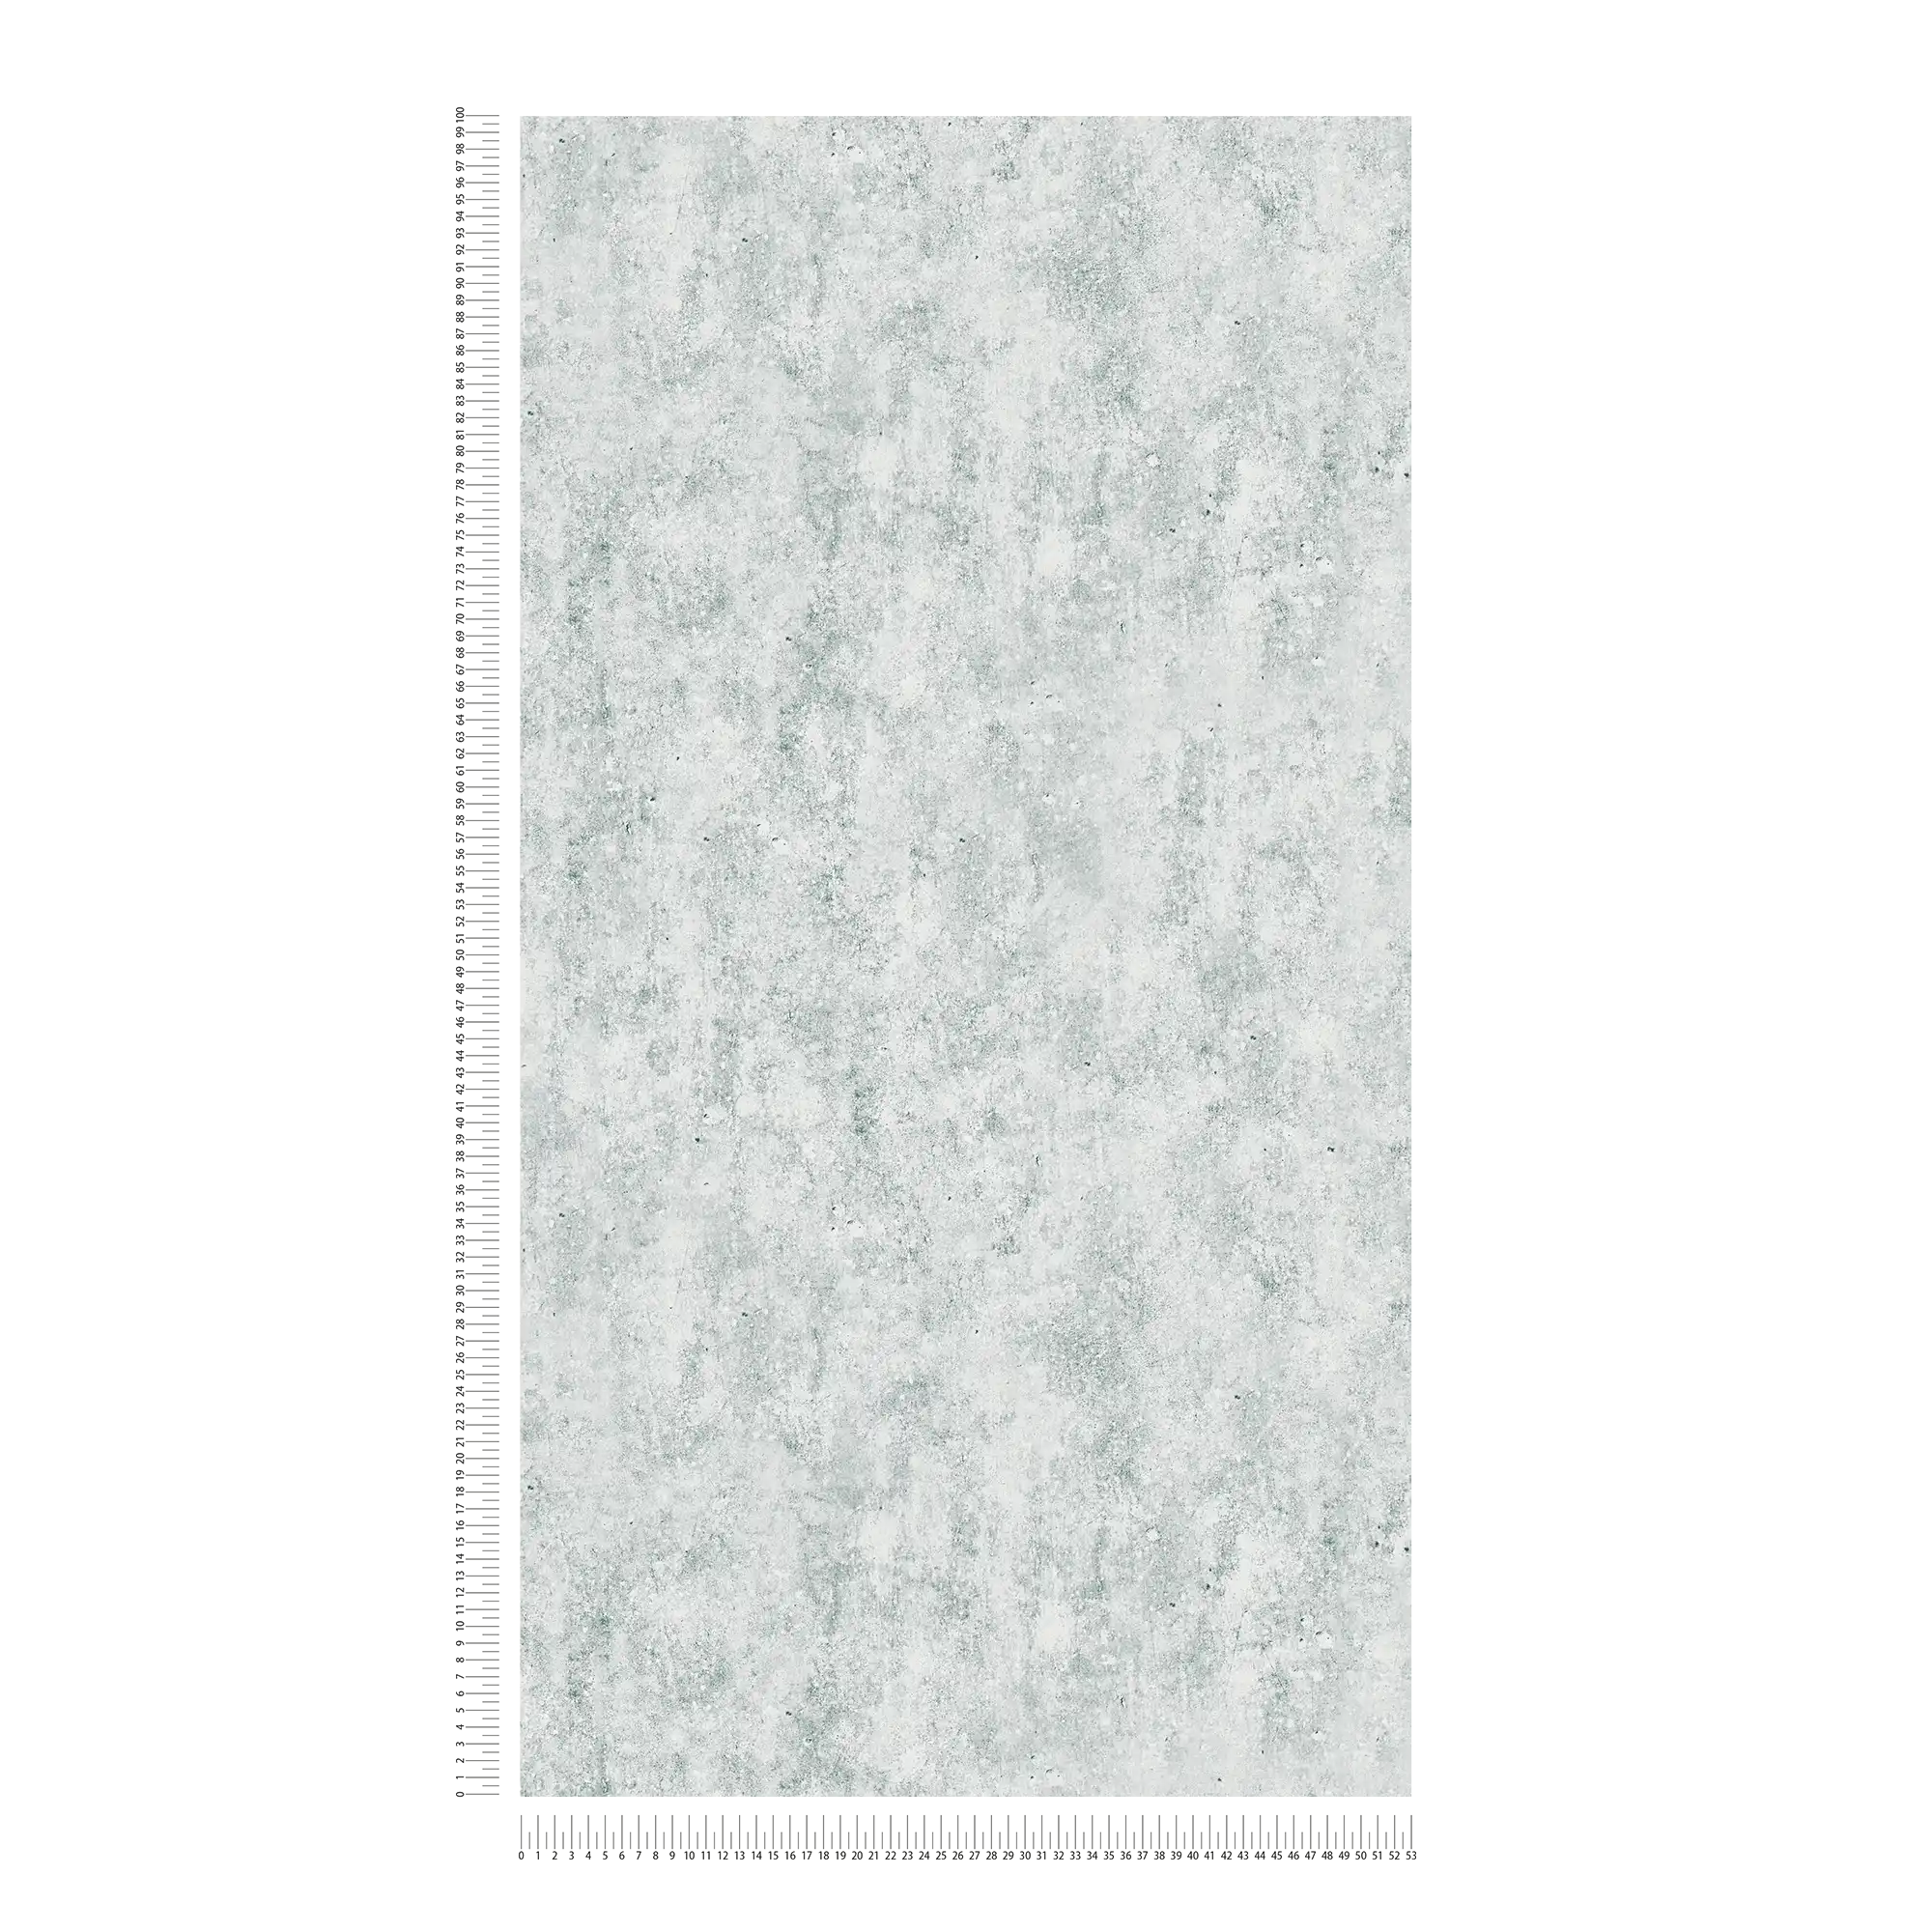             Helle Beton-Tapete mit rauer Oberflächen Optik – Grau
        